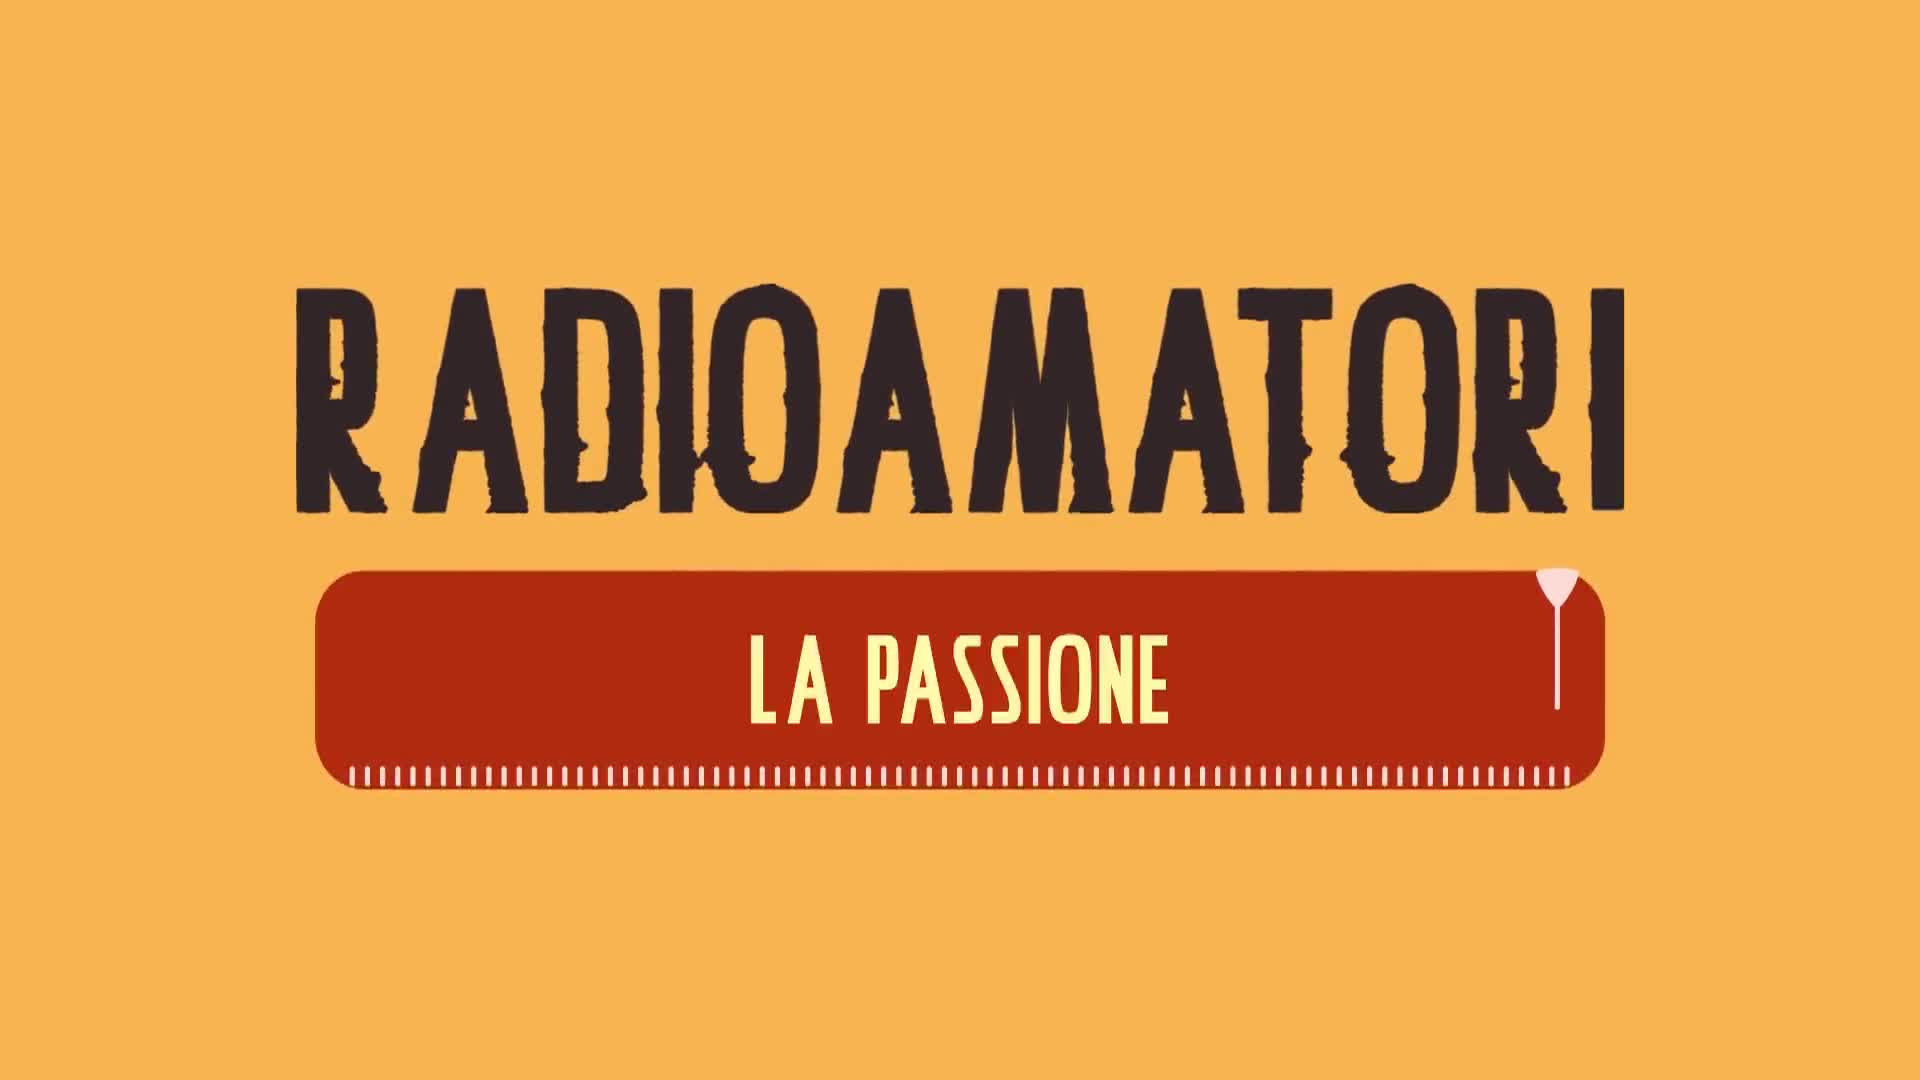 Radioamatori | La passione - immagine